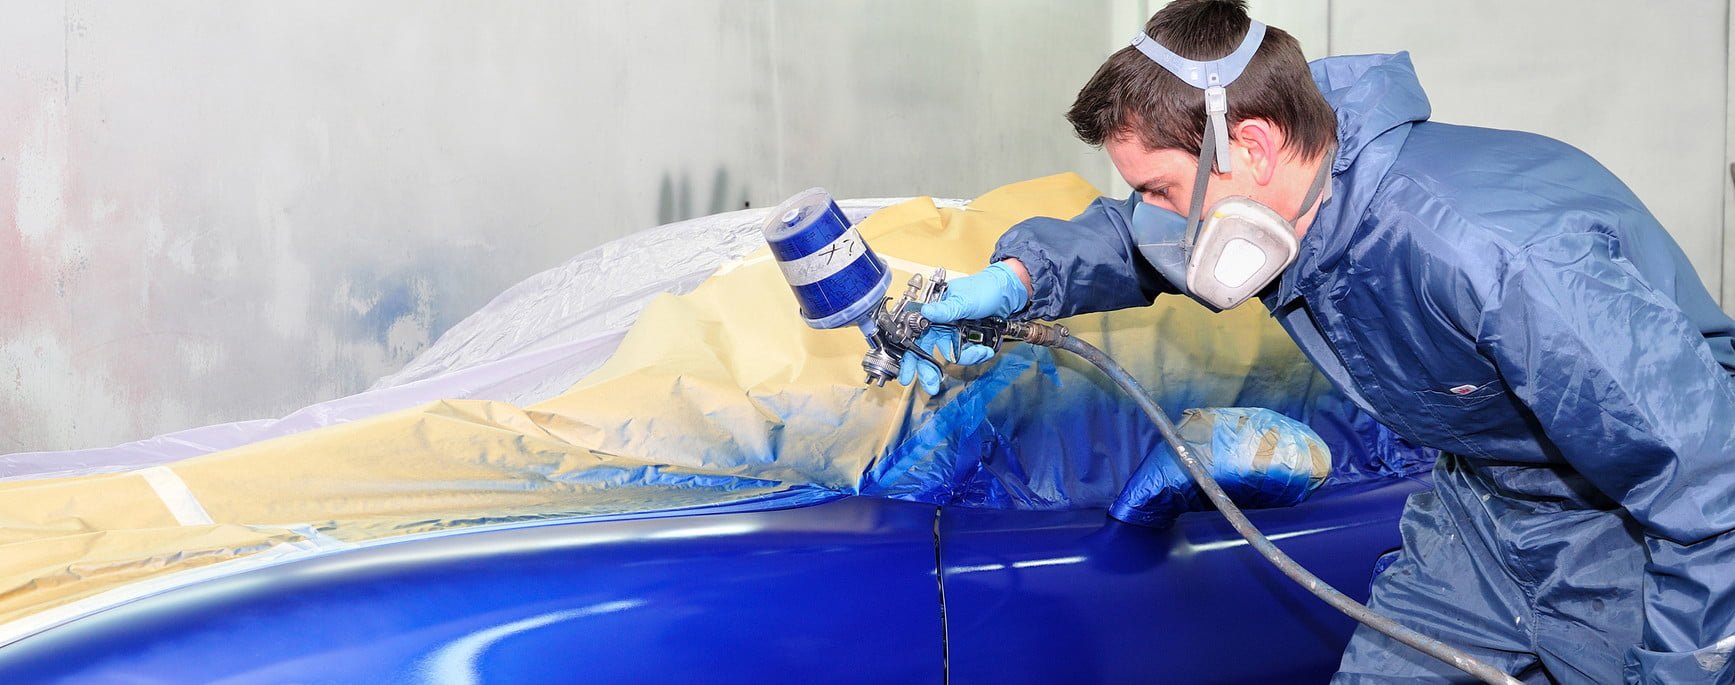 Car painting e1439887852533 طلاء جديد يحافظ على سيارتك باردة في أشد الأجواء حرارة مجلة نقطة العلمية